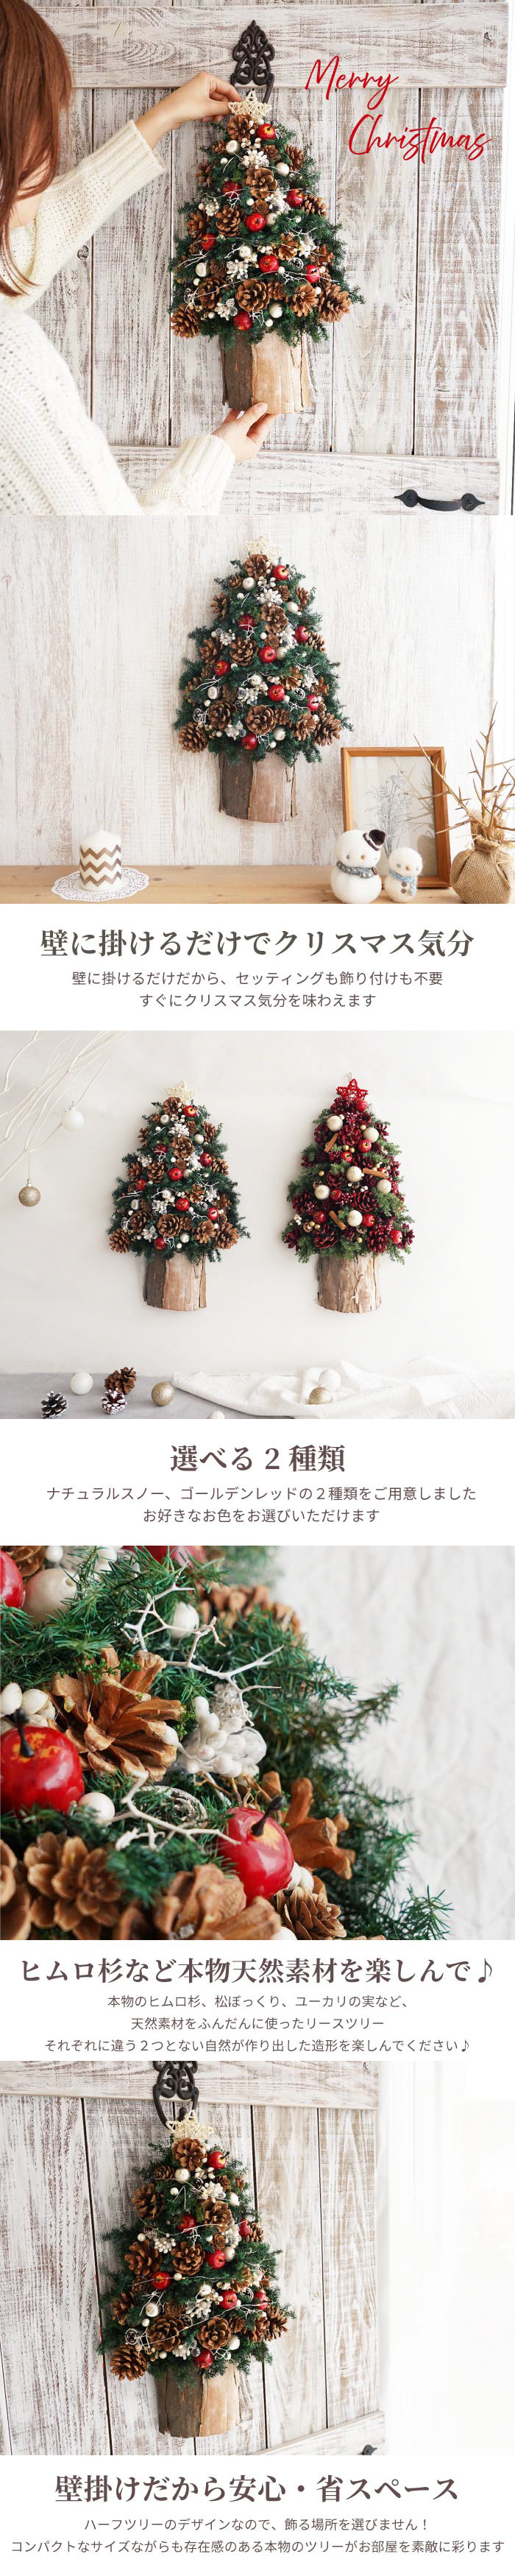 新品正規Christmas/森のクリスマスリース②/ヒムロ杉/ブルーアイス/ノイバラの実 フラワー・リース